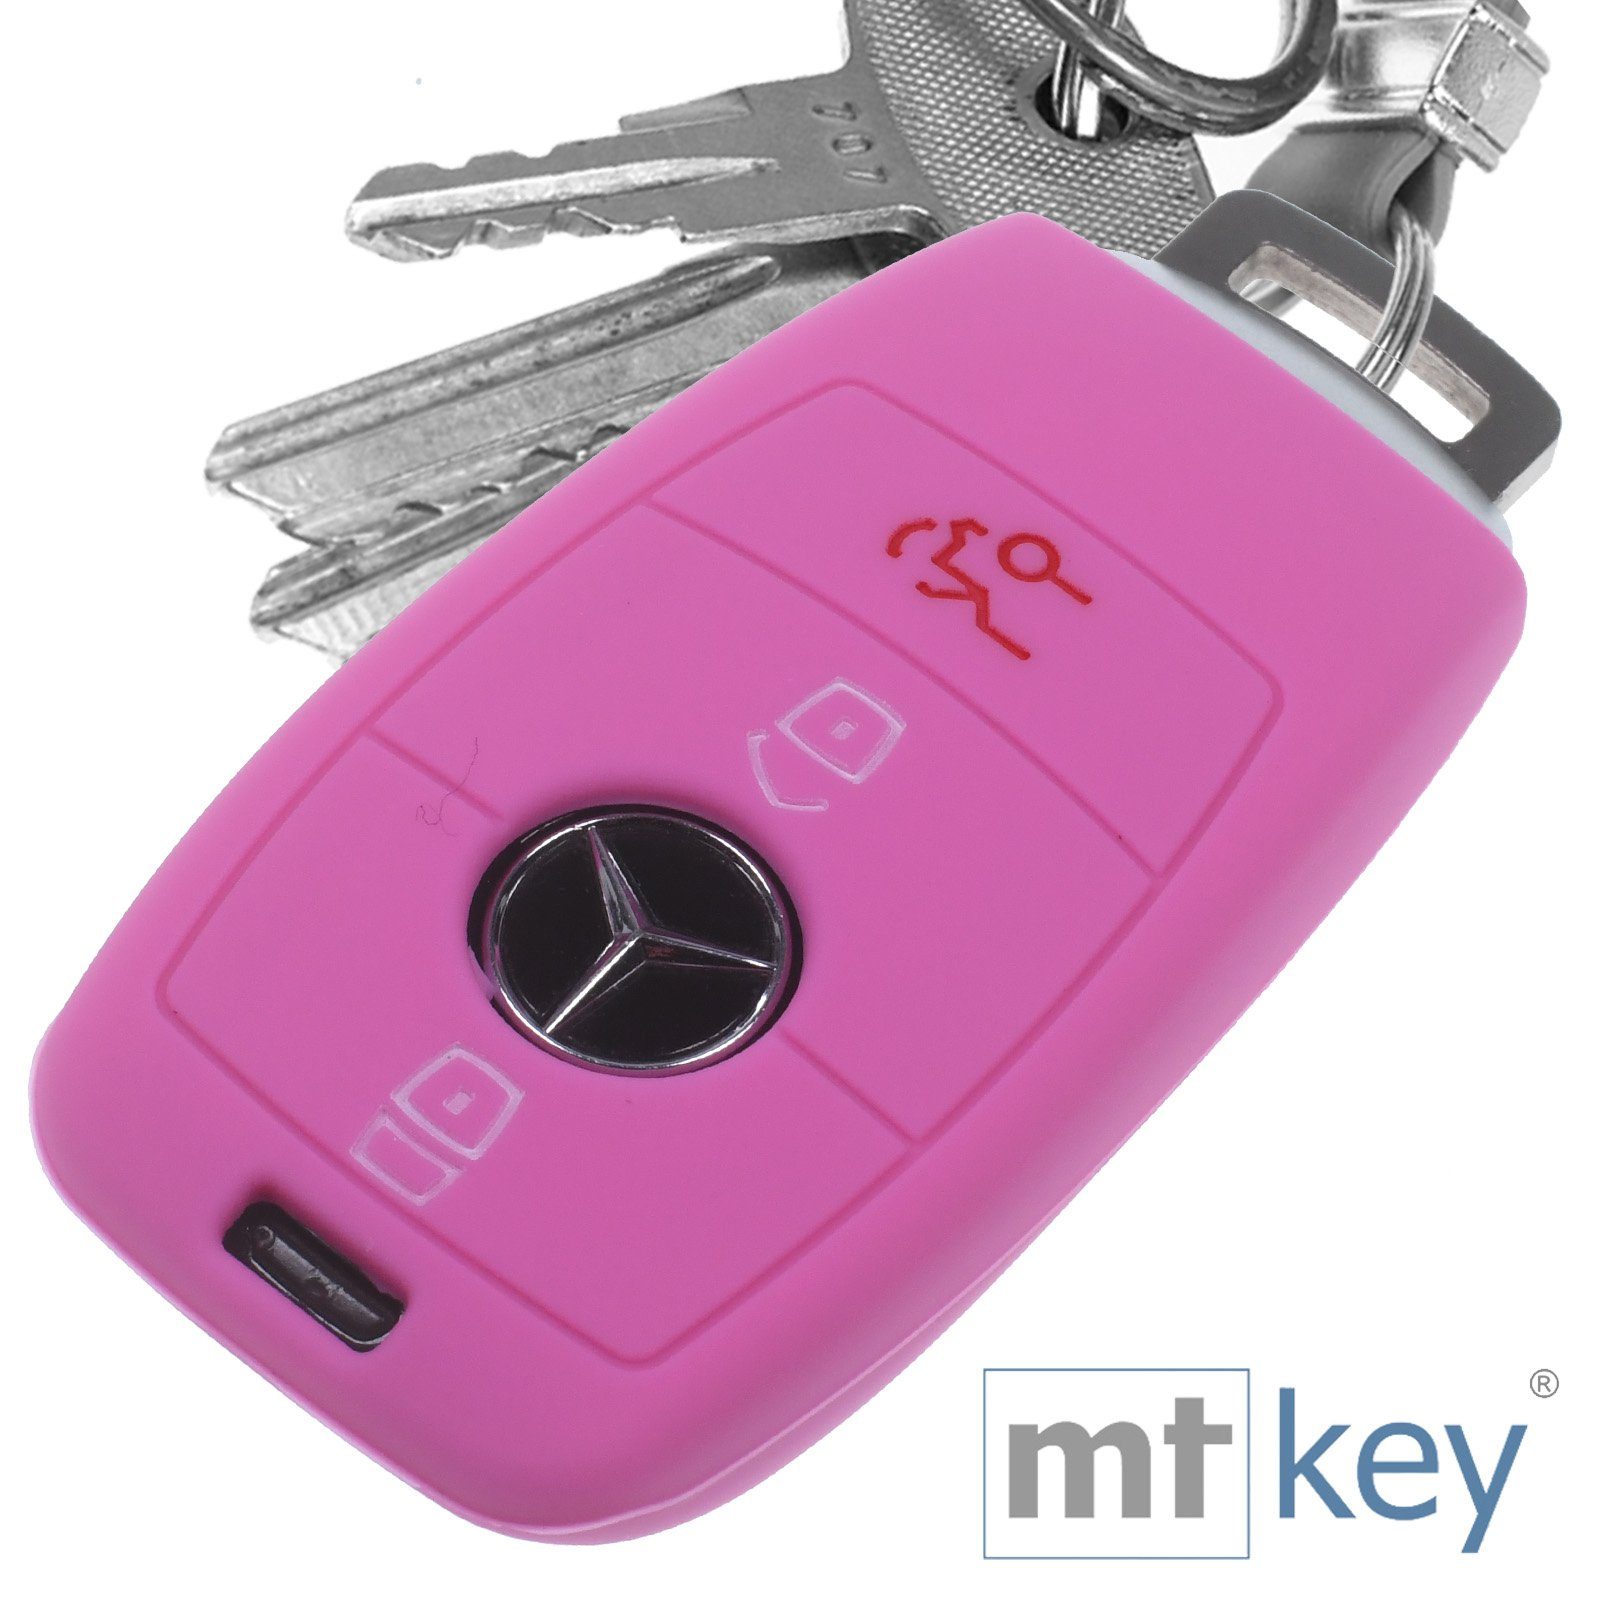 mt-key Schlüsseltasche Autoschlüssel Softcase Silikon Schutzhülle Rosa, für Mercedes Benz E-Klasse W213 S213 C238 W238 3 Tasten KEYLESS